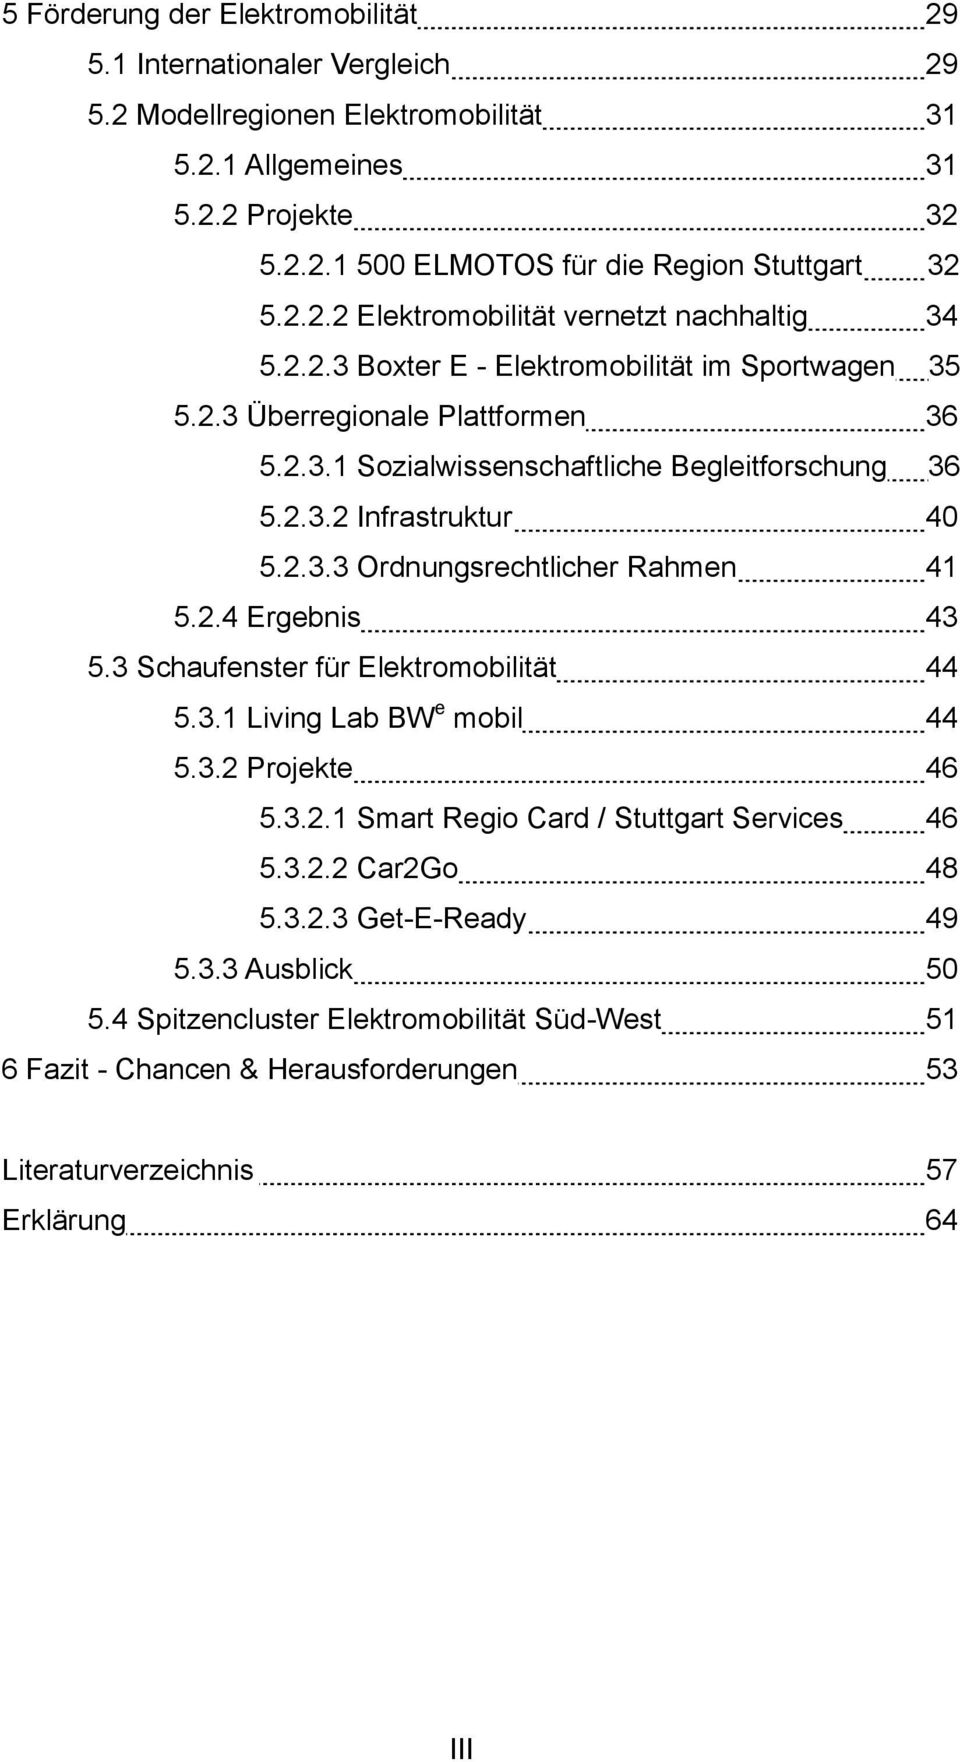 2.3.3 Ordnungsrechtlicher Rahmen 41 5.2.4 Ergebnis 43 5.3 Schaufenster für Elektromobilität 44 5.3.1 Living Lab BW e mobil 44 5.3.2 Projekte 46 5.3.2.1 Smart Regio Card / Stuttgart Services 46 5.3.2.2 Car2Go 48 5.